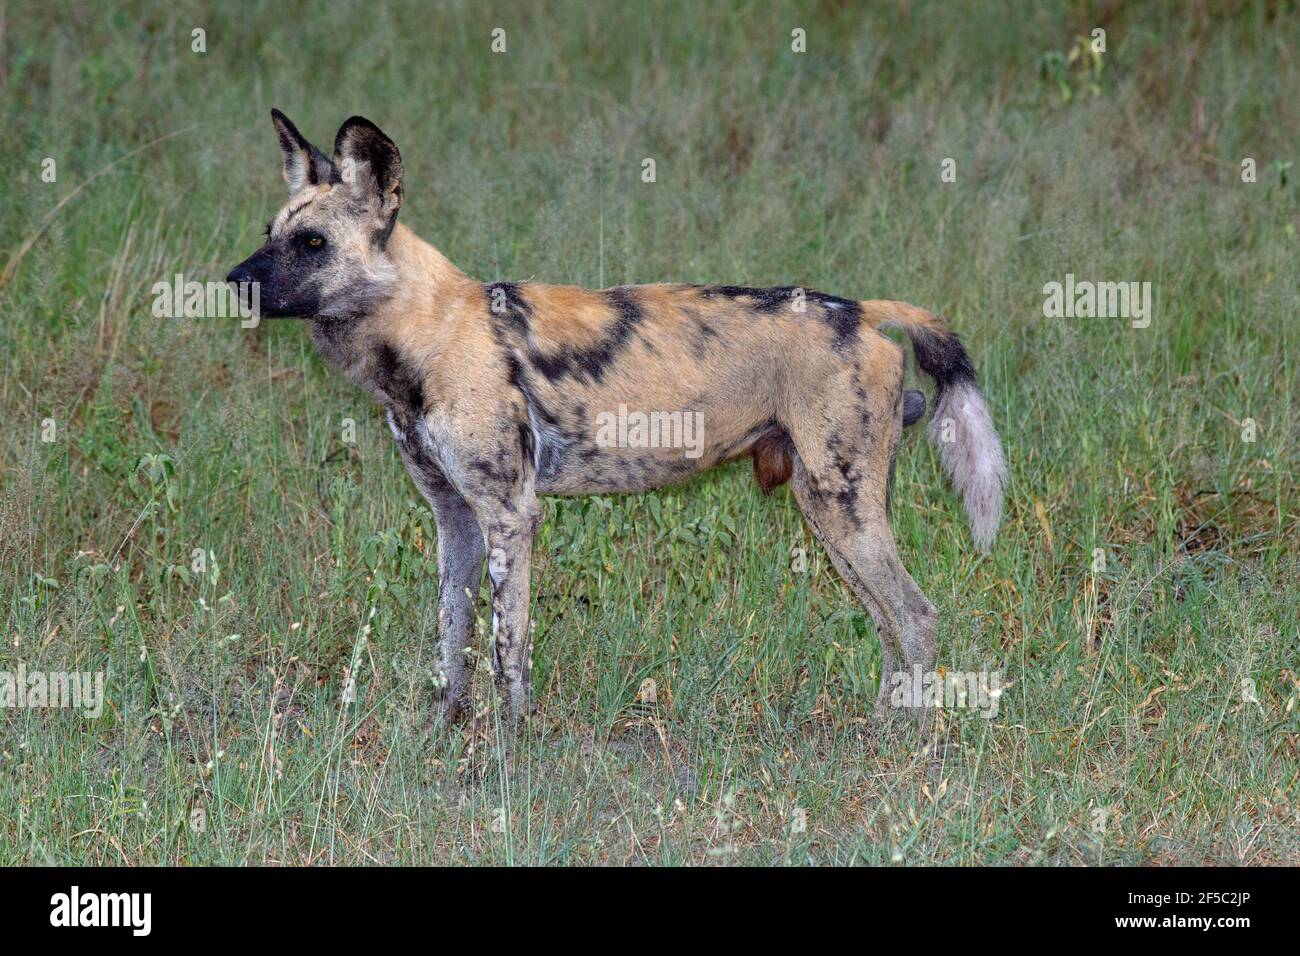 African Wild Hunting Dog,Painted Wolf, Lycaon pictus, männliches Profil, zur Aufmerksamkeit stehen, nahaufnahme, Zeigt Genitalien, Schwanz leicht angehoben. Botswana. Stockfoto